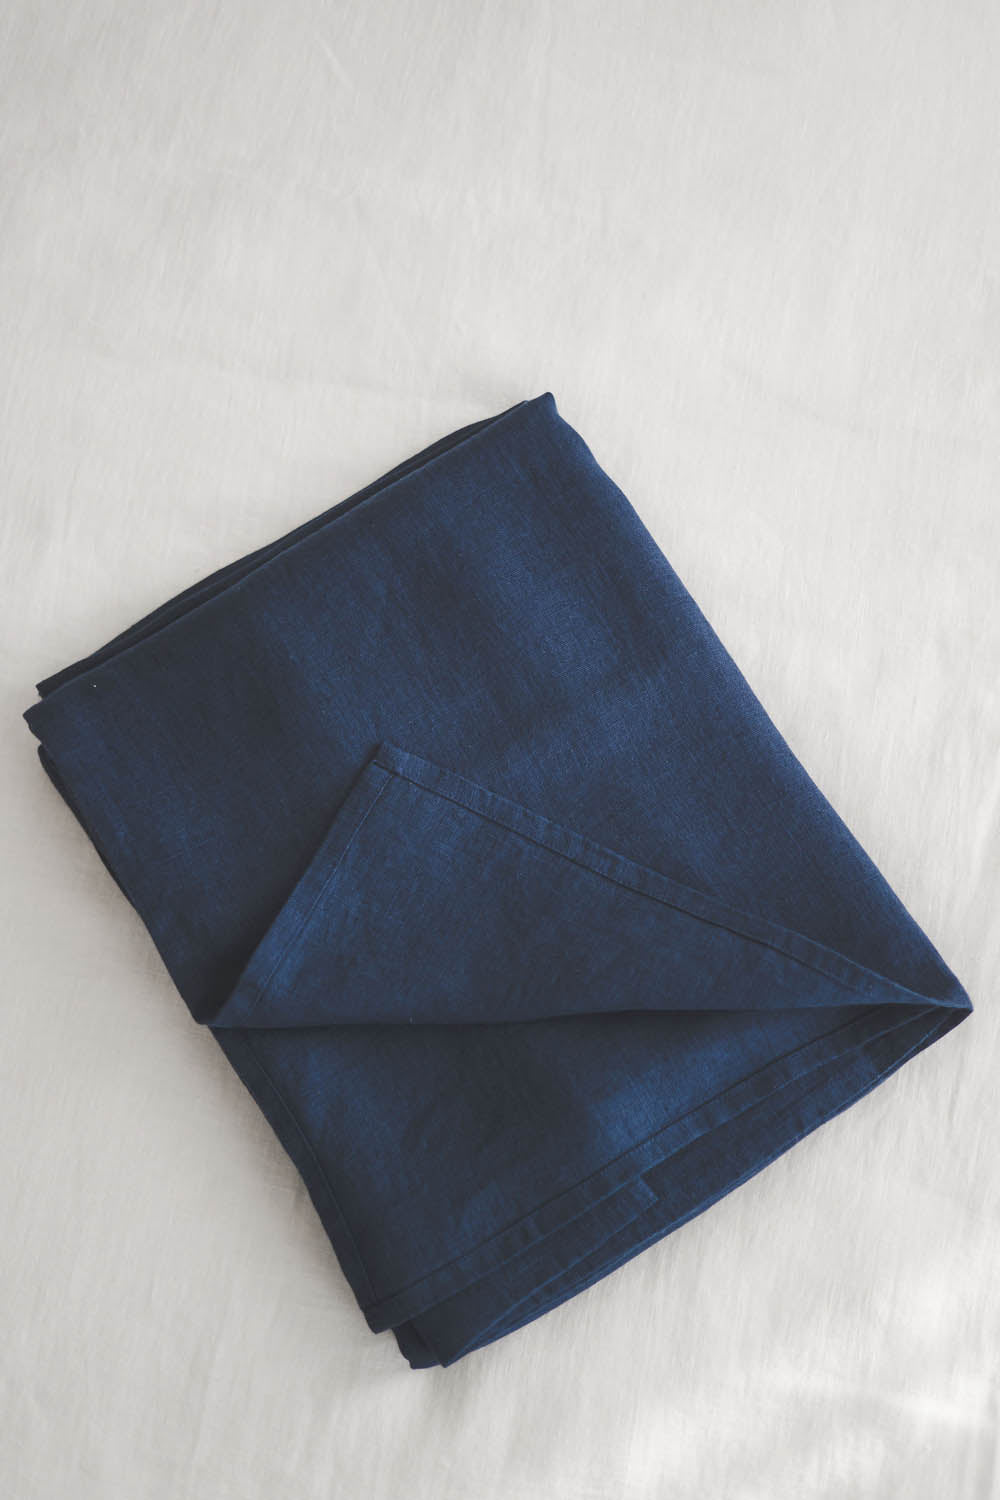 Midnight blue linen flat sheet